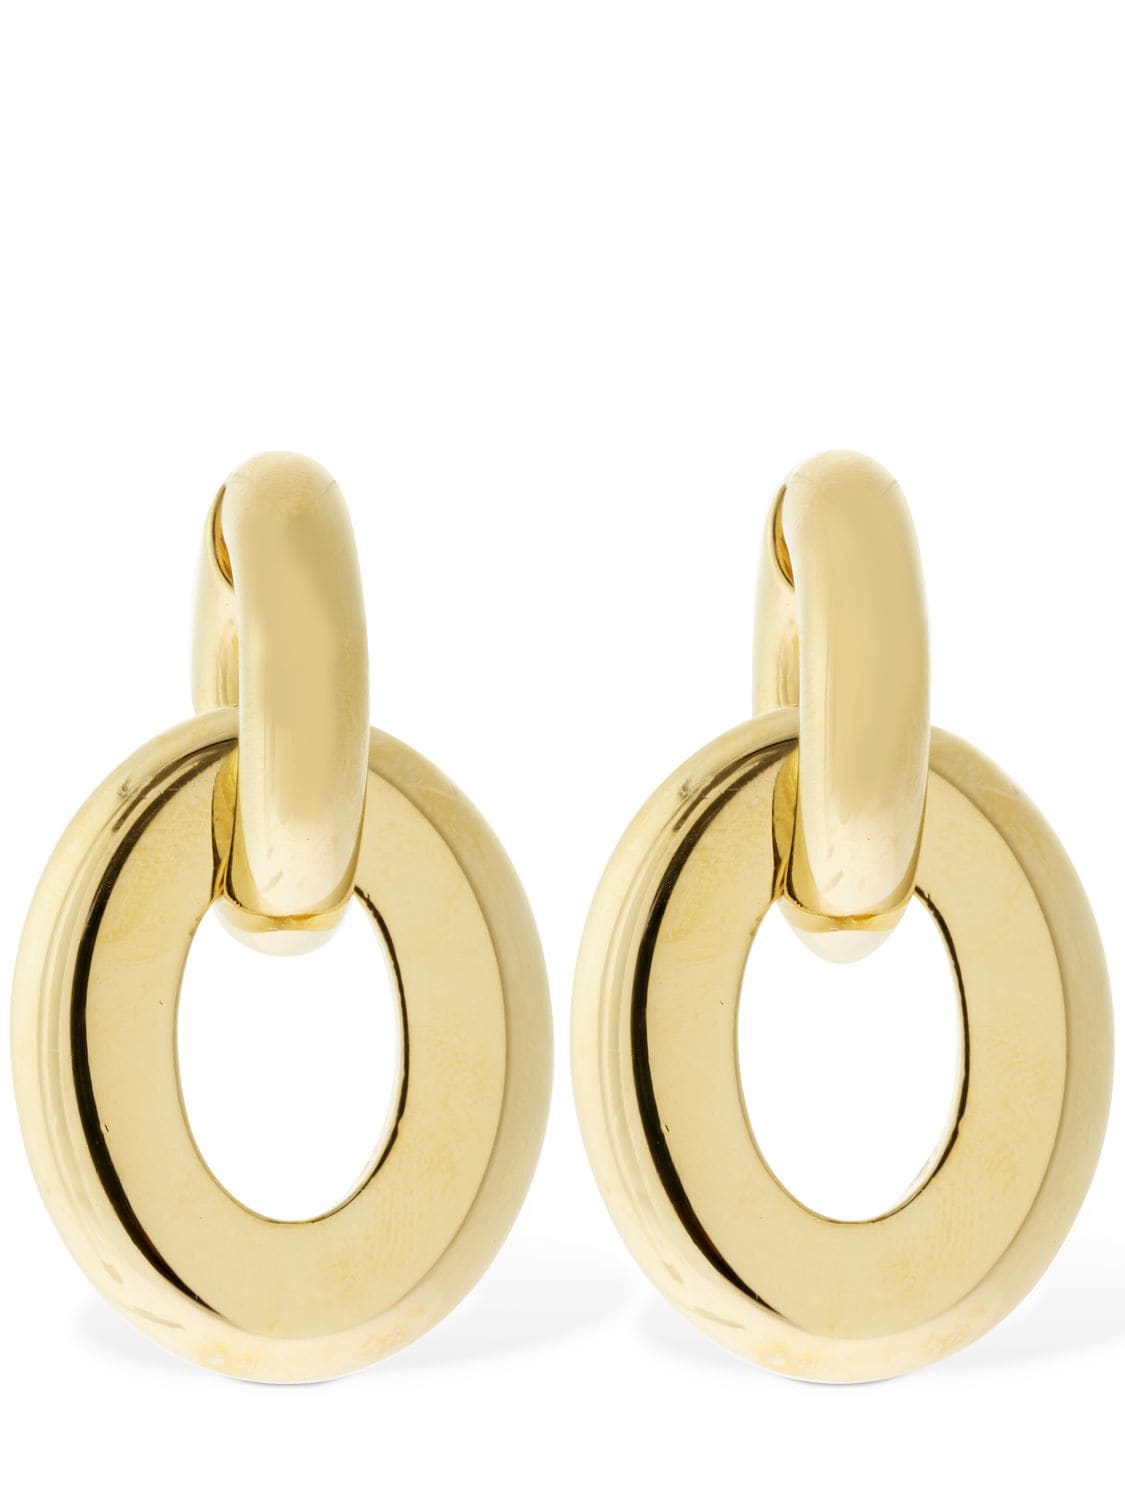 BURBERRY Earrings for Women | ModeSens